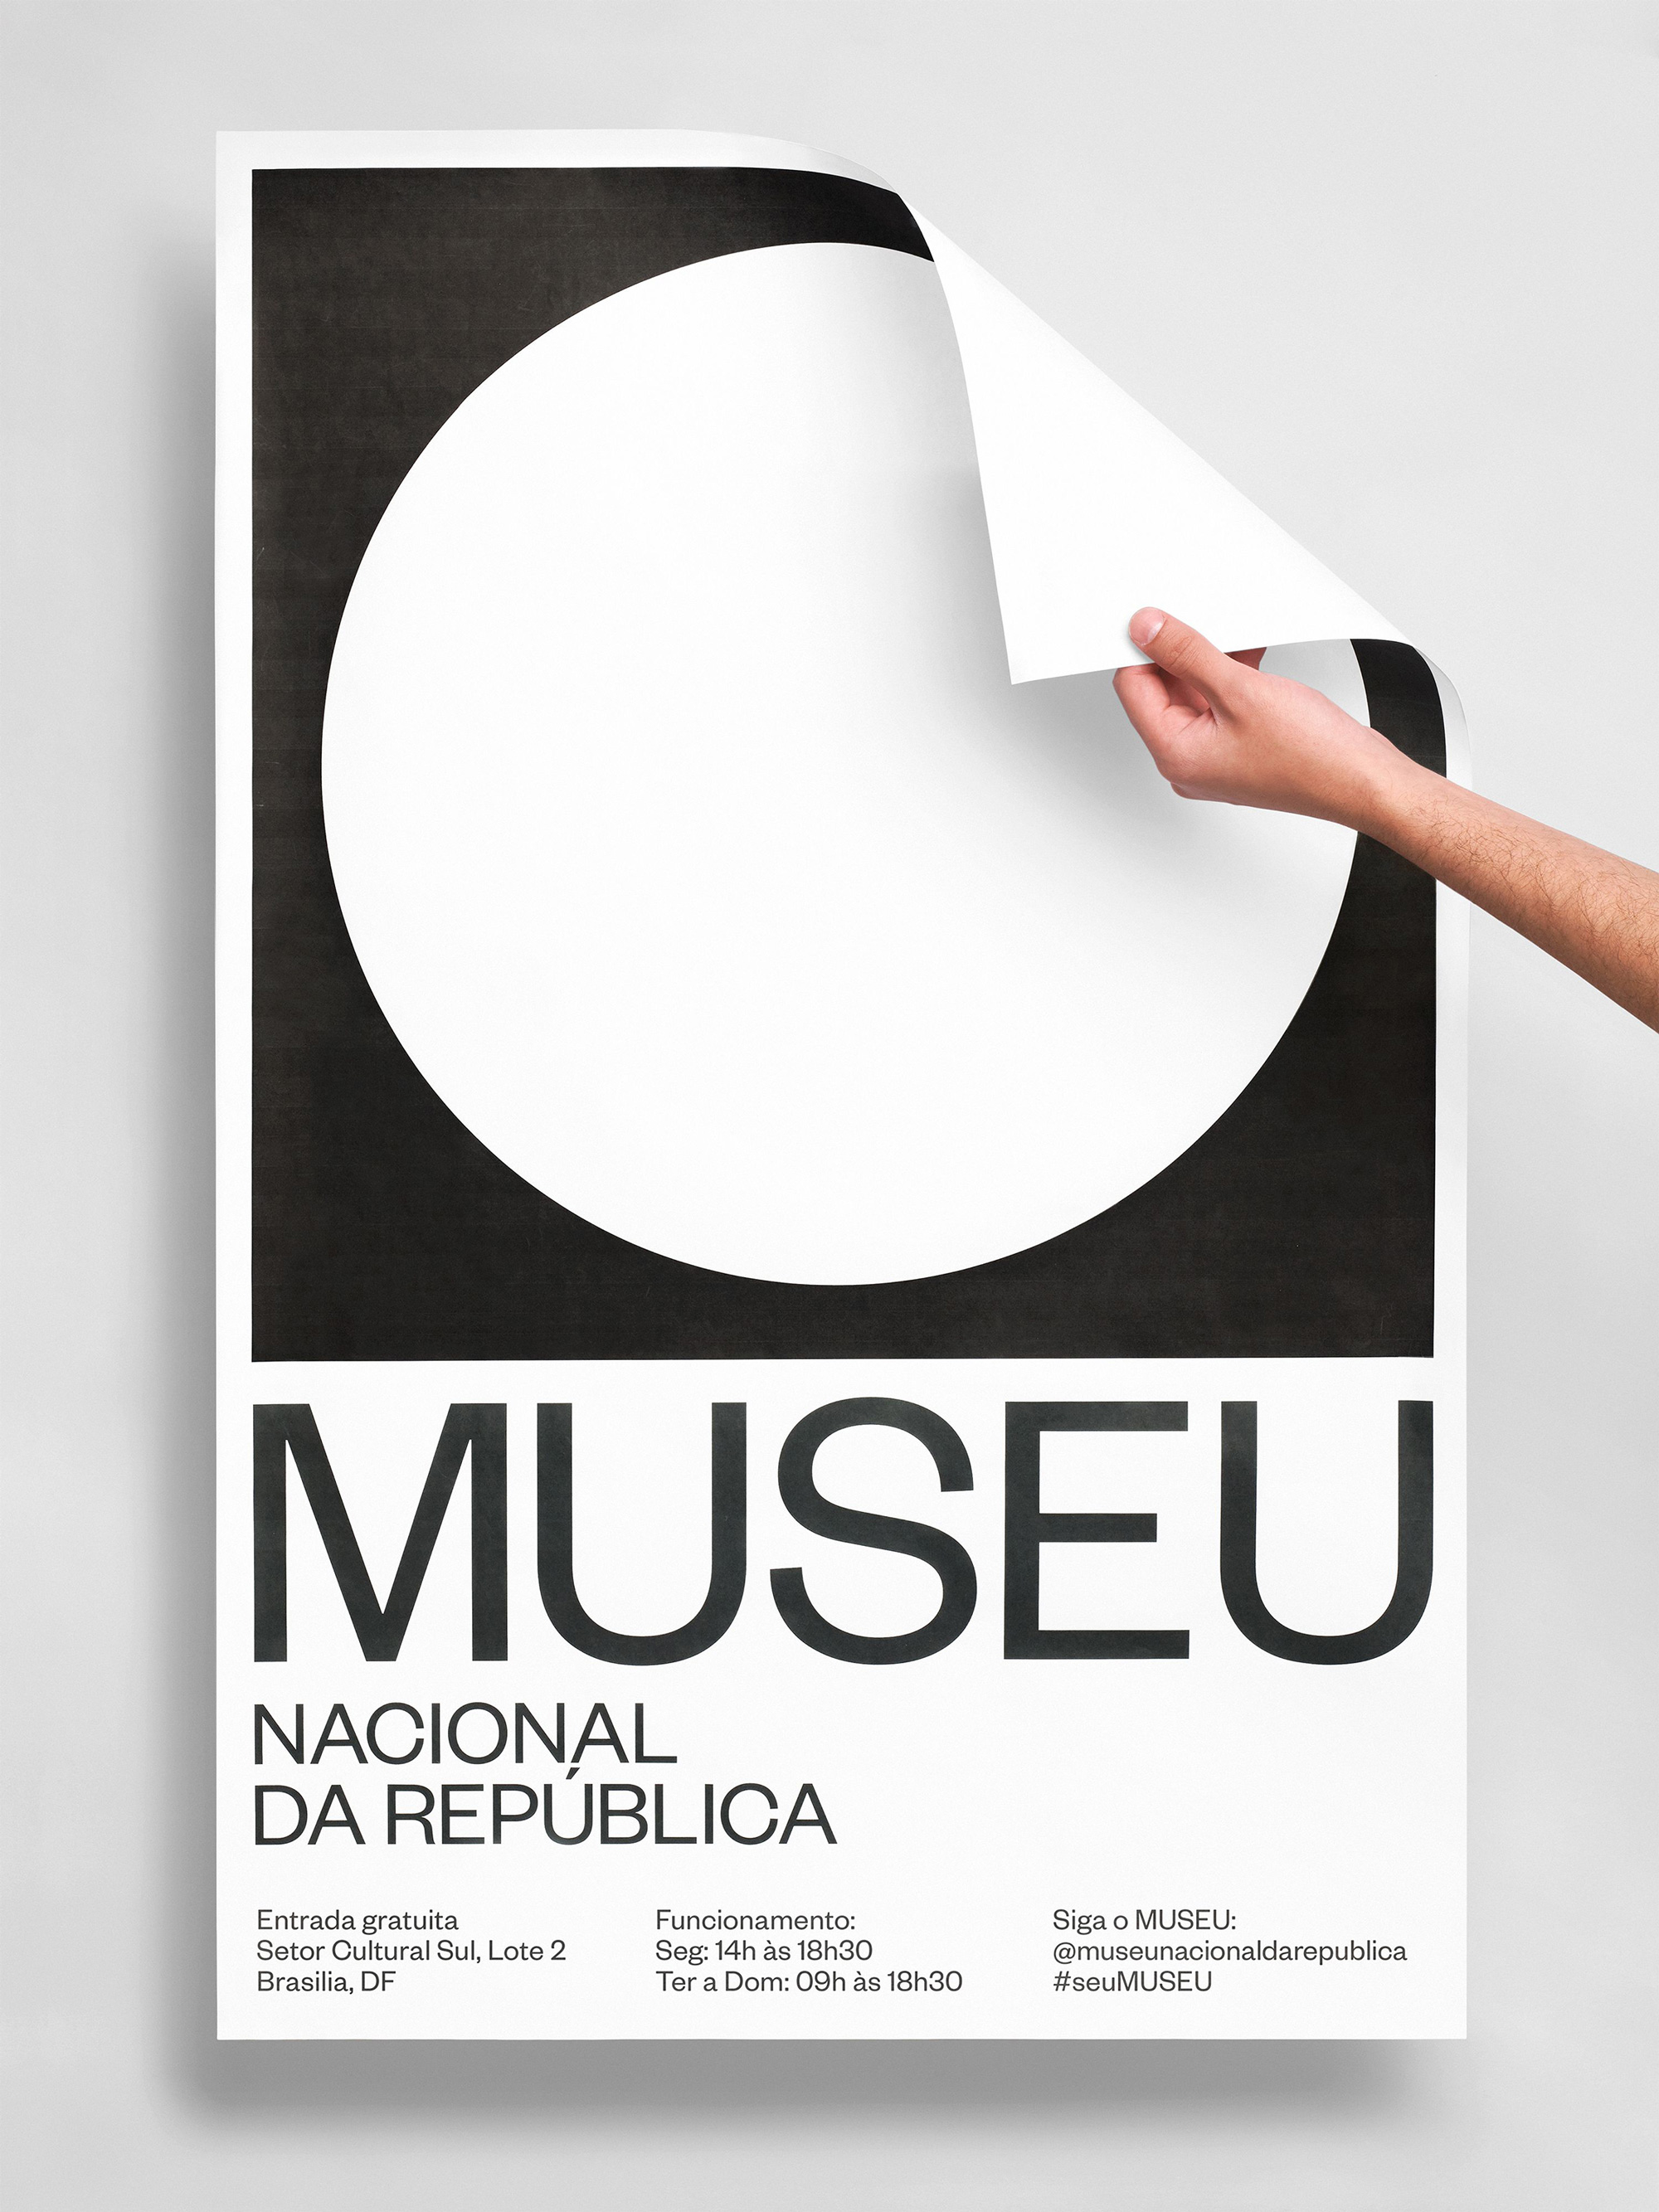 New Logo and Identity for Museu Nacional da República by Porto Rocha